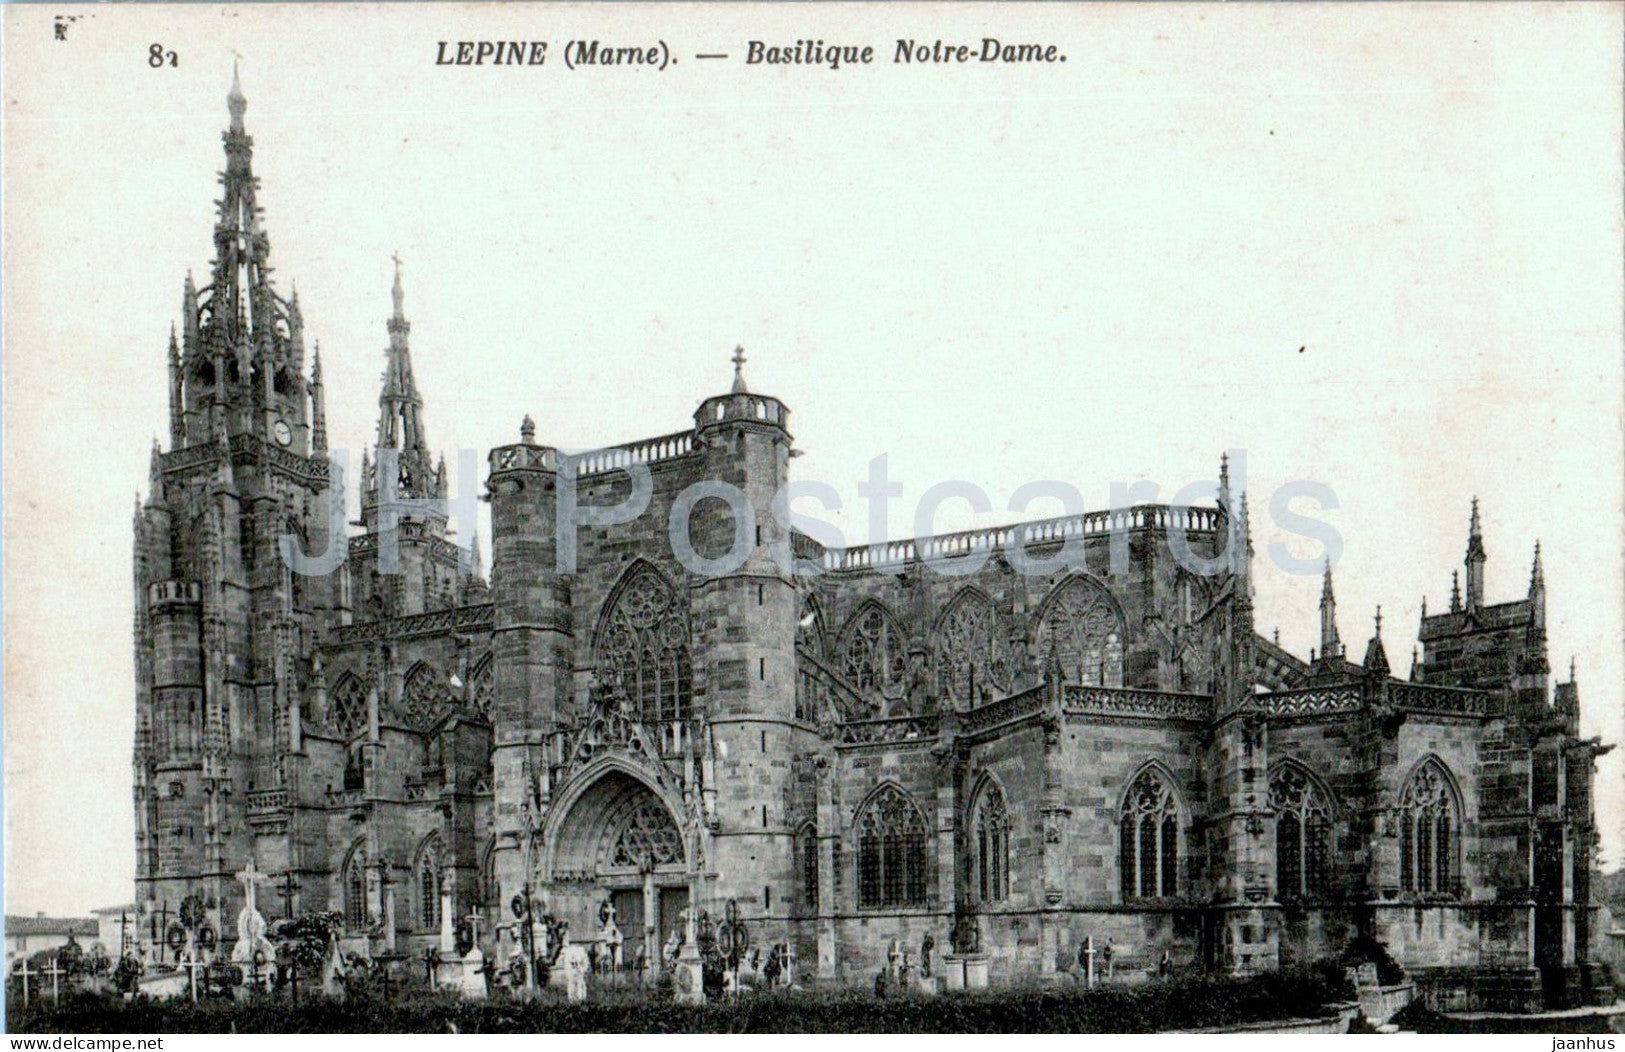 L'Epine - Basilique Notre Dame - cathedral - 82 - old postcard - France - unused - JH Postcards